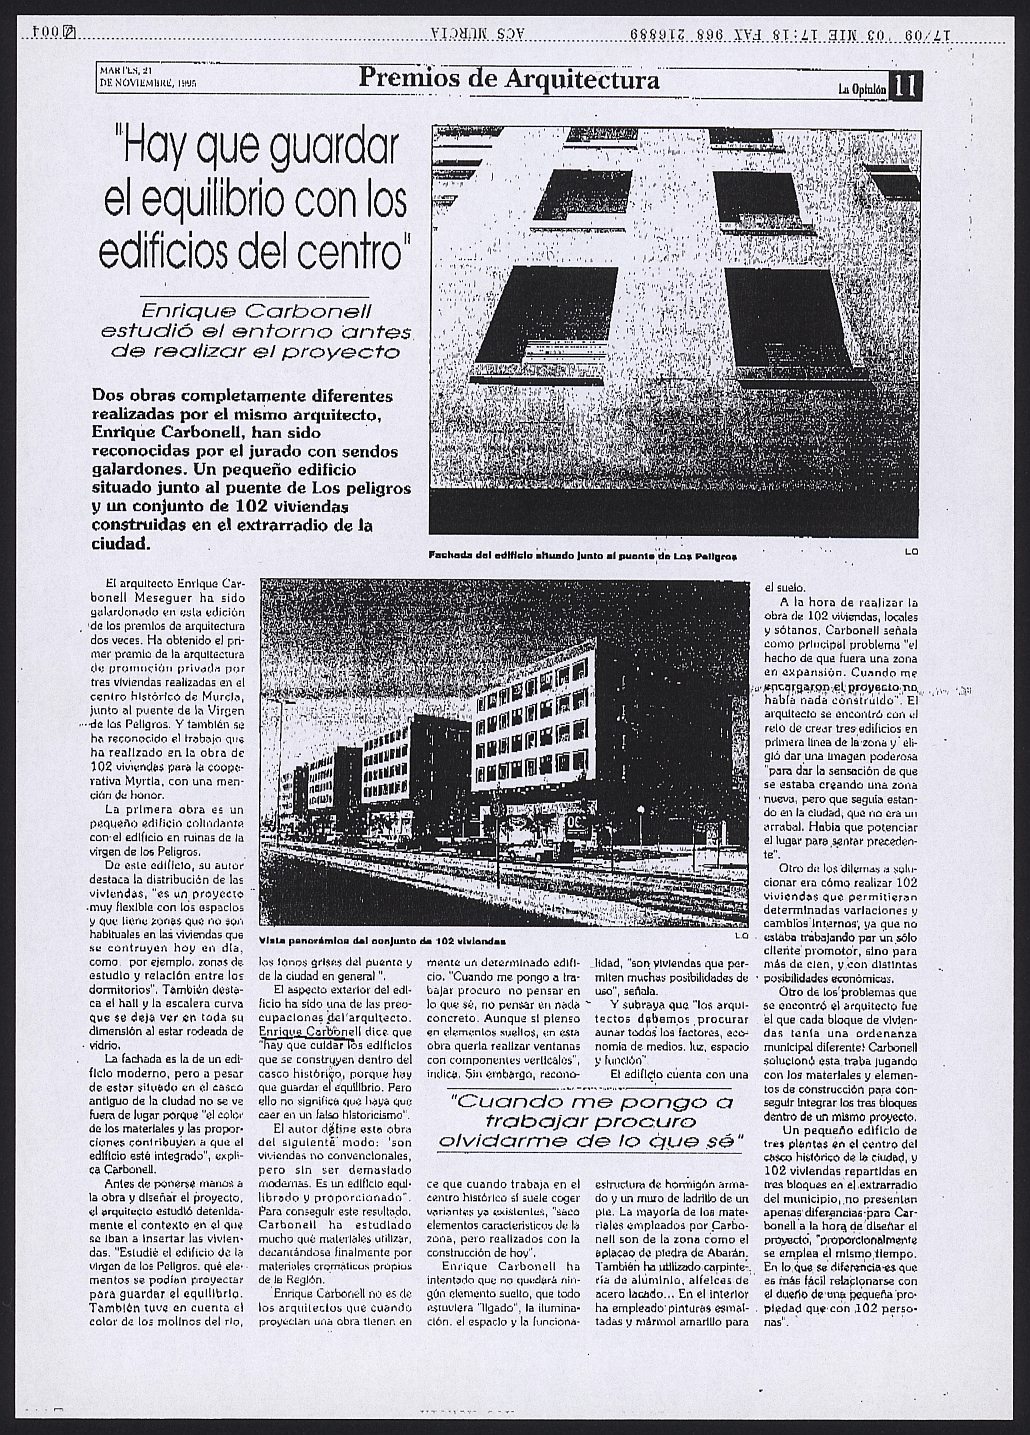 Copia de artículo en La Opinión sobre el Premio de Arquitectura y Urbanismo de la Región de Murcia a Enrique Carbonell.